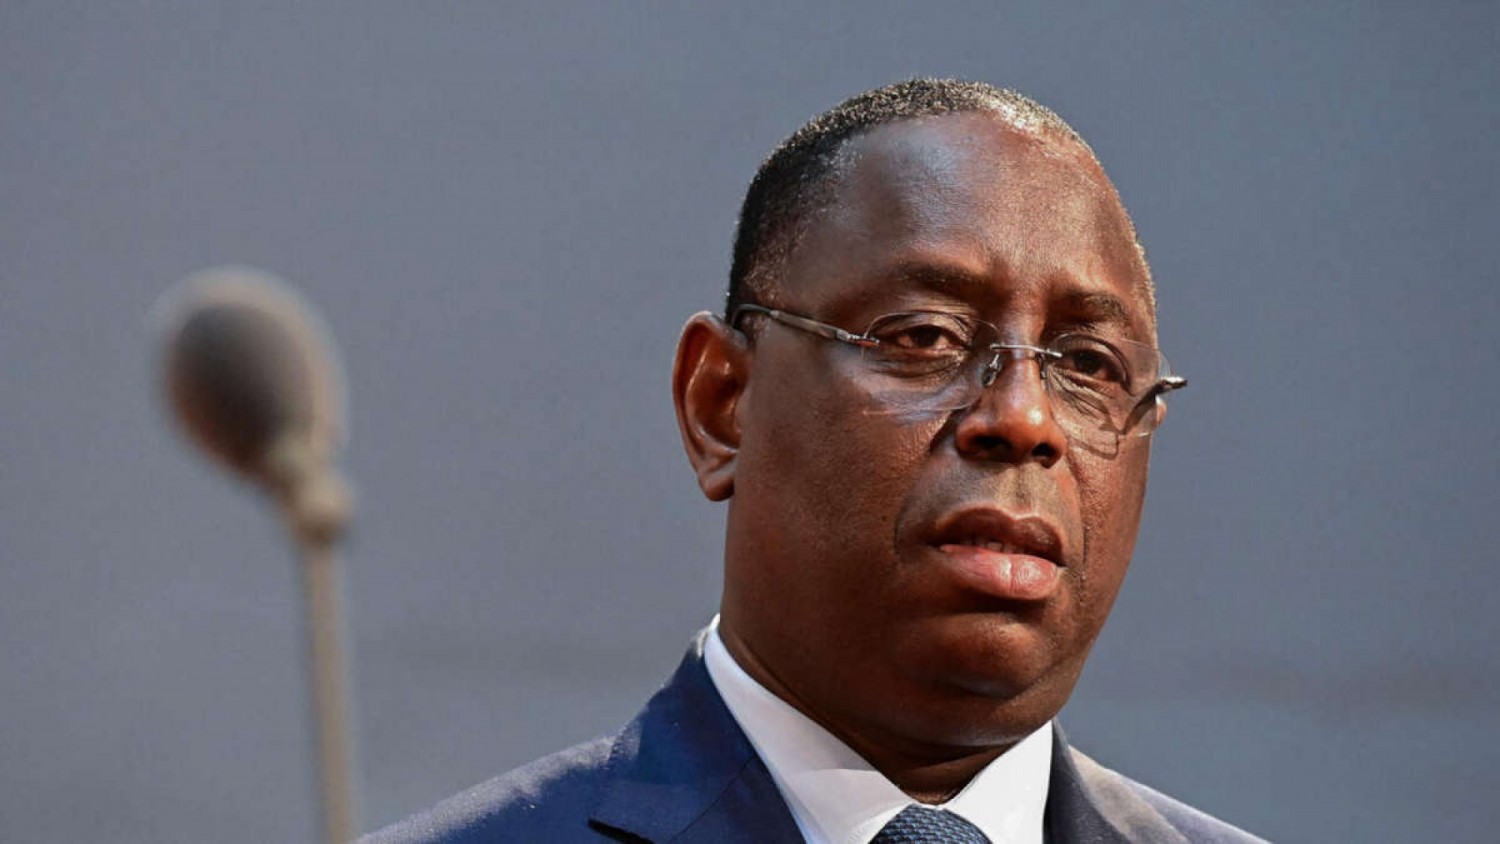 Sénégal : Silencieux depuis les troubles, Macky Sall prendra la parole après les conclusions du dialogue national